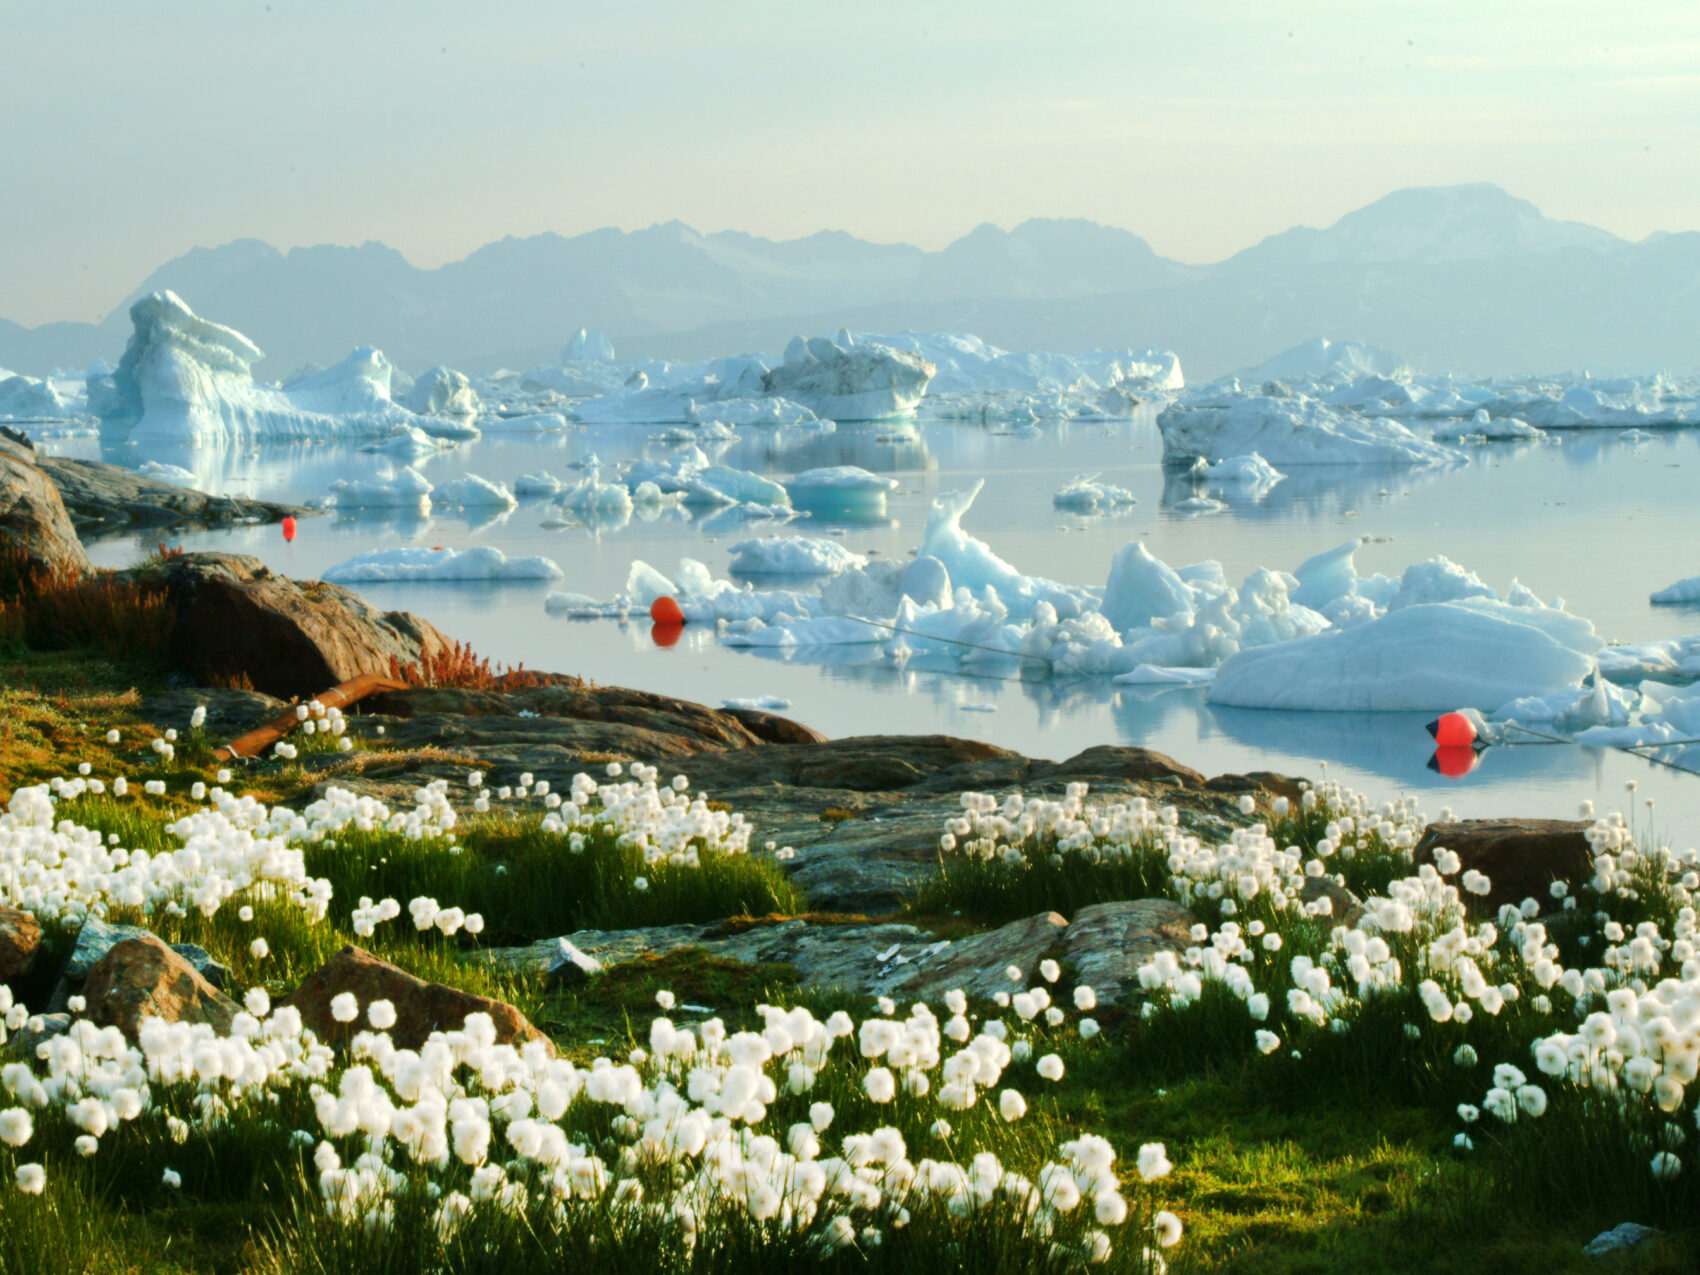 Ostgrönland Blumen und Eisberge Bucht, weiße Blumen am Ufer, orange Bojen in Ufernähe, viele Eisberge im Hintergrund